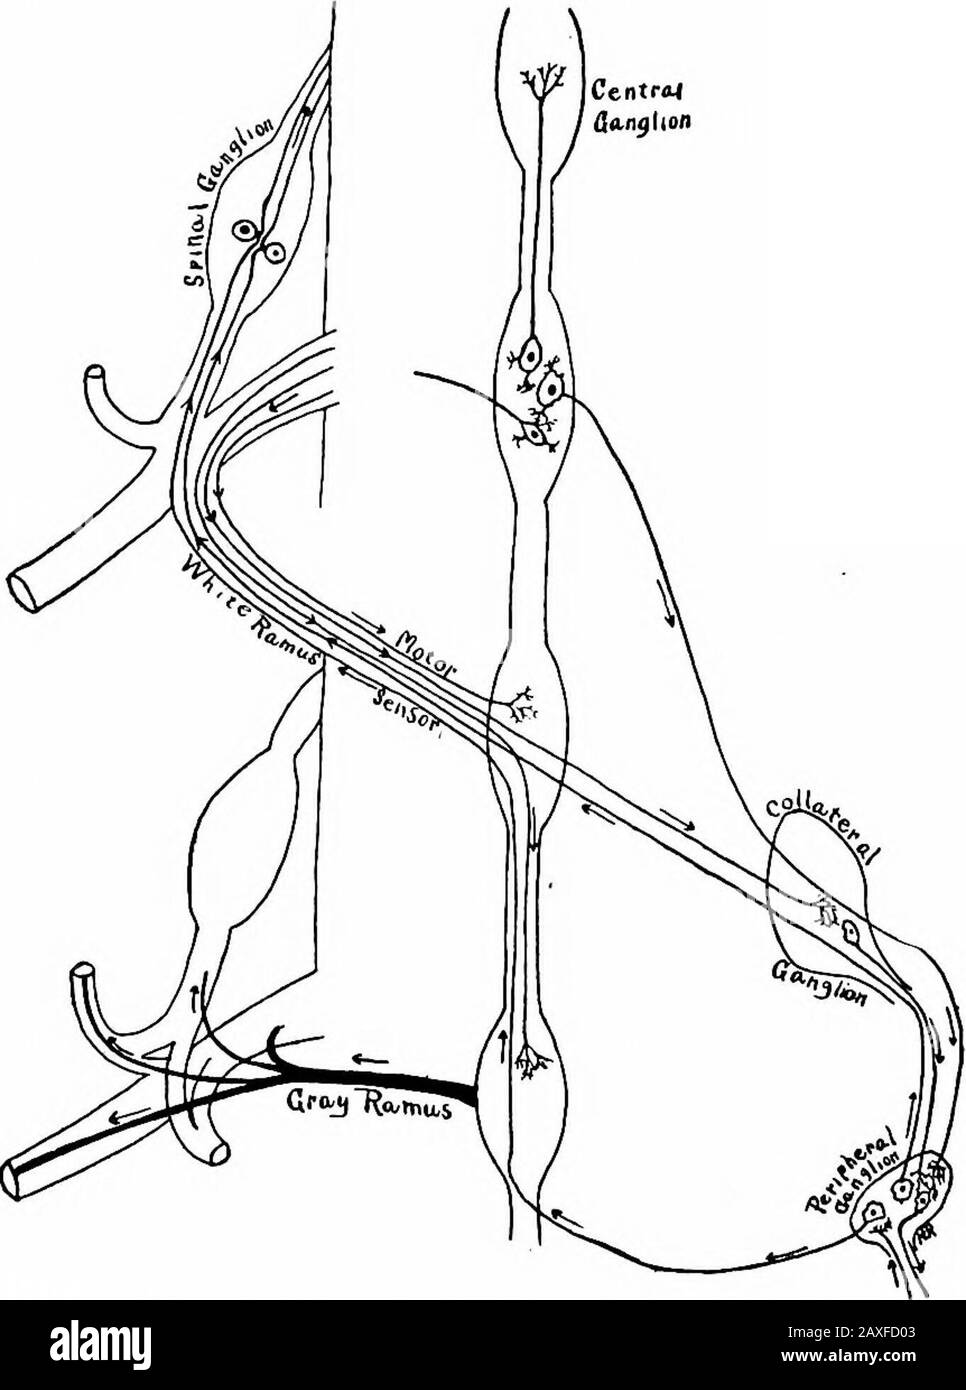 Un manuel d'anatomie . anches pour les autres nerfs, ou les branches périphériques qui passdirectement, ou par des plexus aux viscères et aux vaisseaux de la tête, du cou et du thorax. Les ganglions cervicaux supérieurs {ganglia cervicales supérieurs) sont thelargest; chacun se trouve en face des deuxième et troisième vertébrés cervicaux. Chacun est large, plat et en forme de broche, d'une couleur rougeâtre et repré-sents une fusion des quatre premiers ganglions cervicaux. De son extrémité supérieure (cephahc), une branche monte le long de l'artère carotidienne interne et dans le crâne, ses deux branches forment la carotide interne et la caverne- 468 LE SYSTÈME NERVEUX Banque D'Images